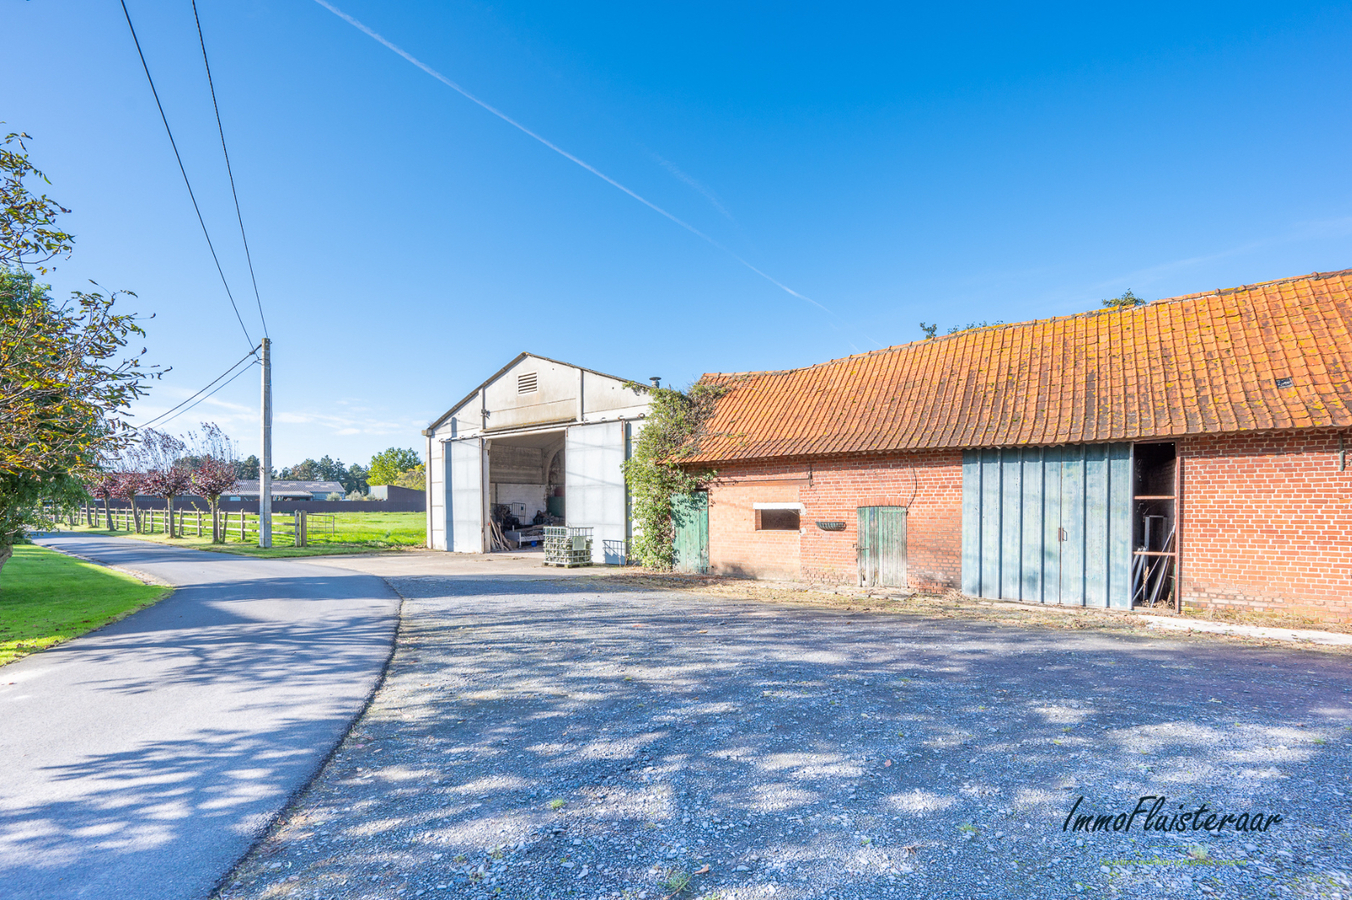 Property sold in Koolskamp